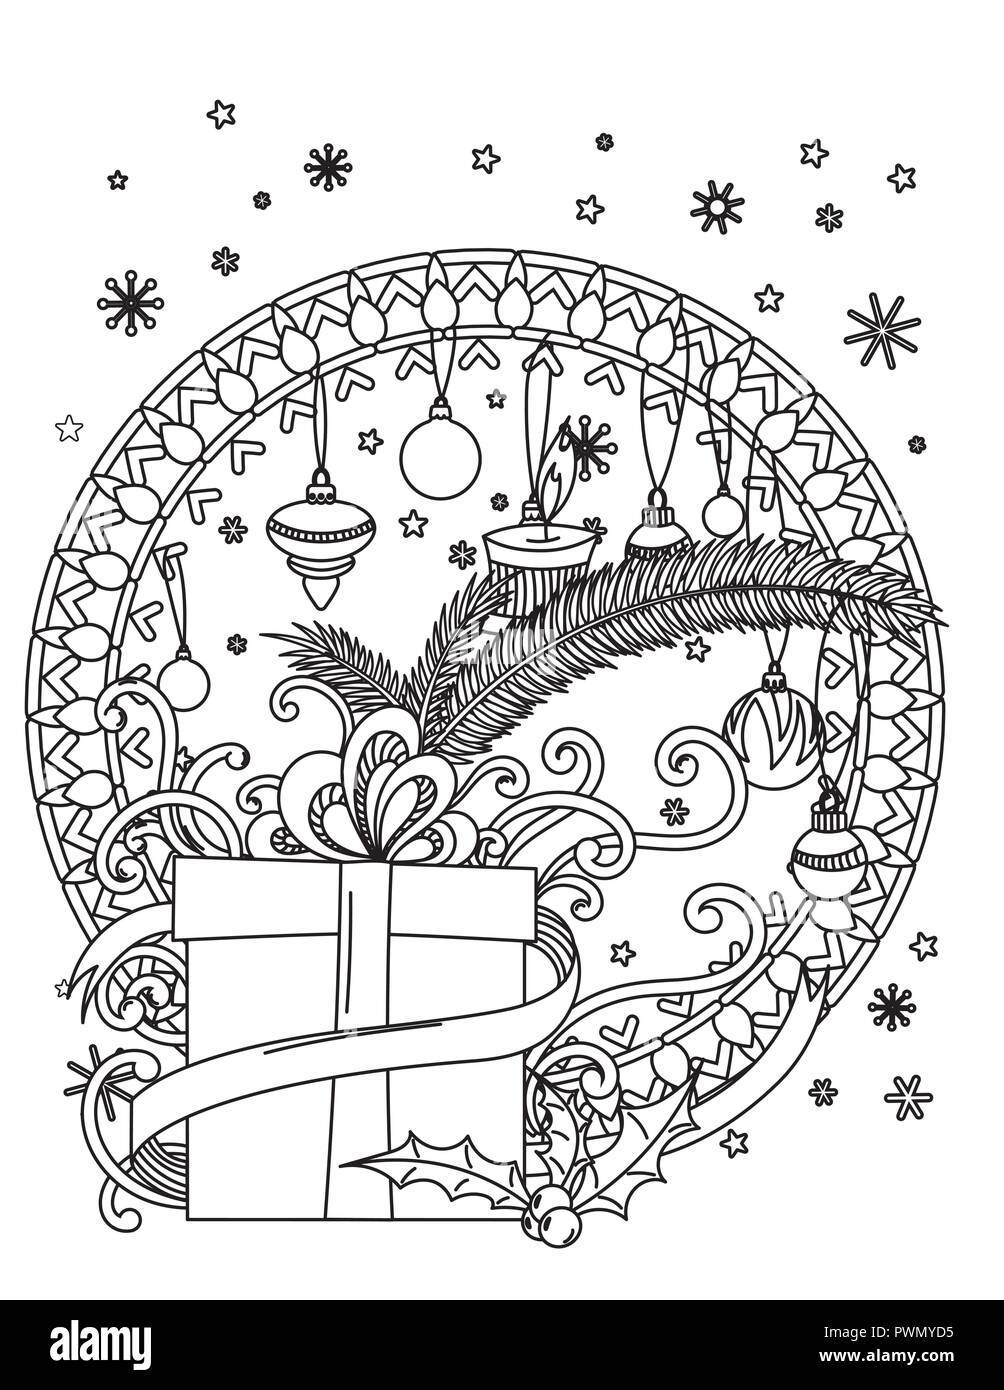 Natale Mandala Coloring page. Adulto libro da colorare. Holiday decore, doni, sfere e ribbond. Disegnata a mano illustrazione vettoriale. Illustrazione Vettoriale